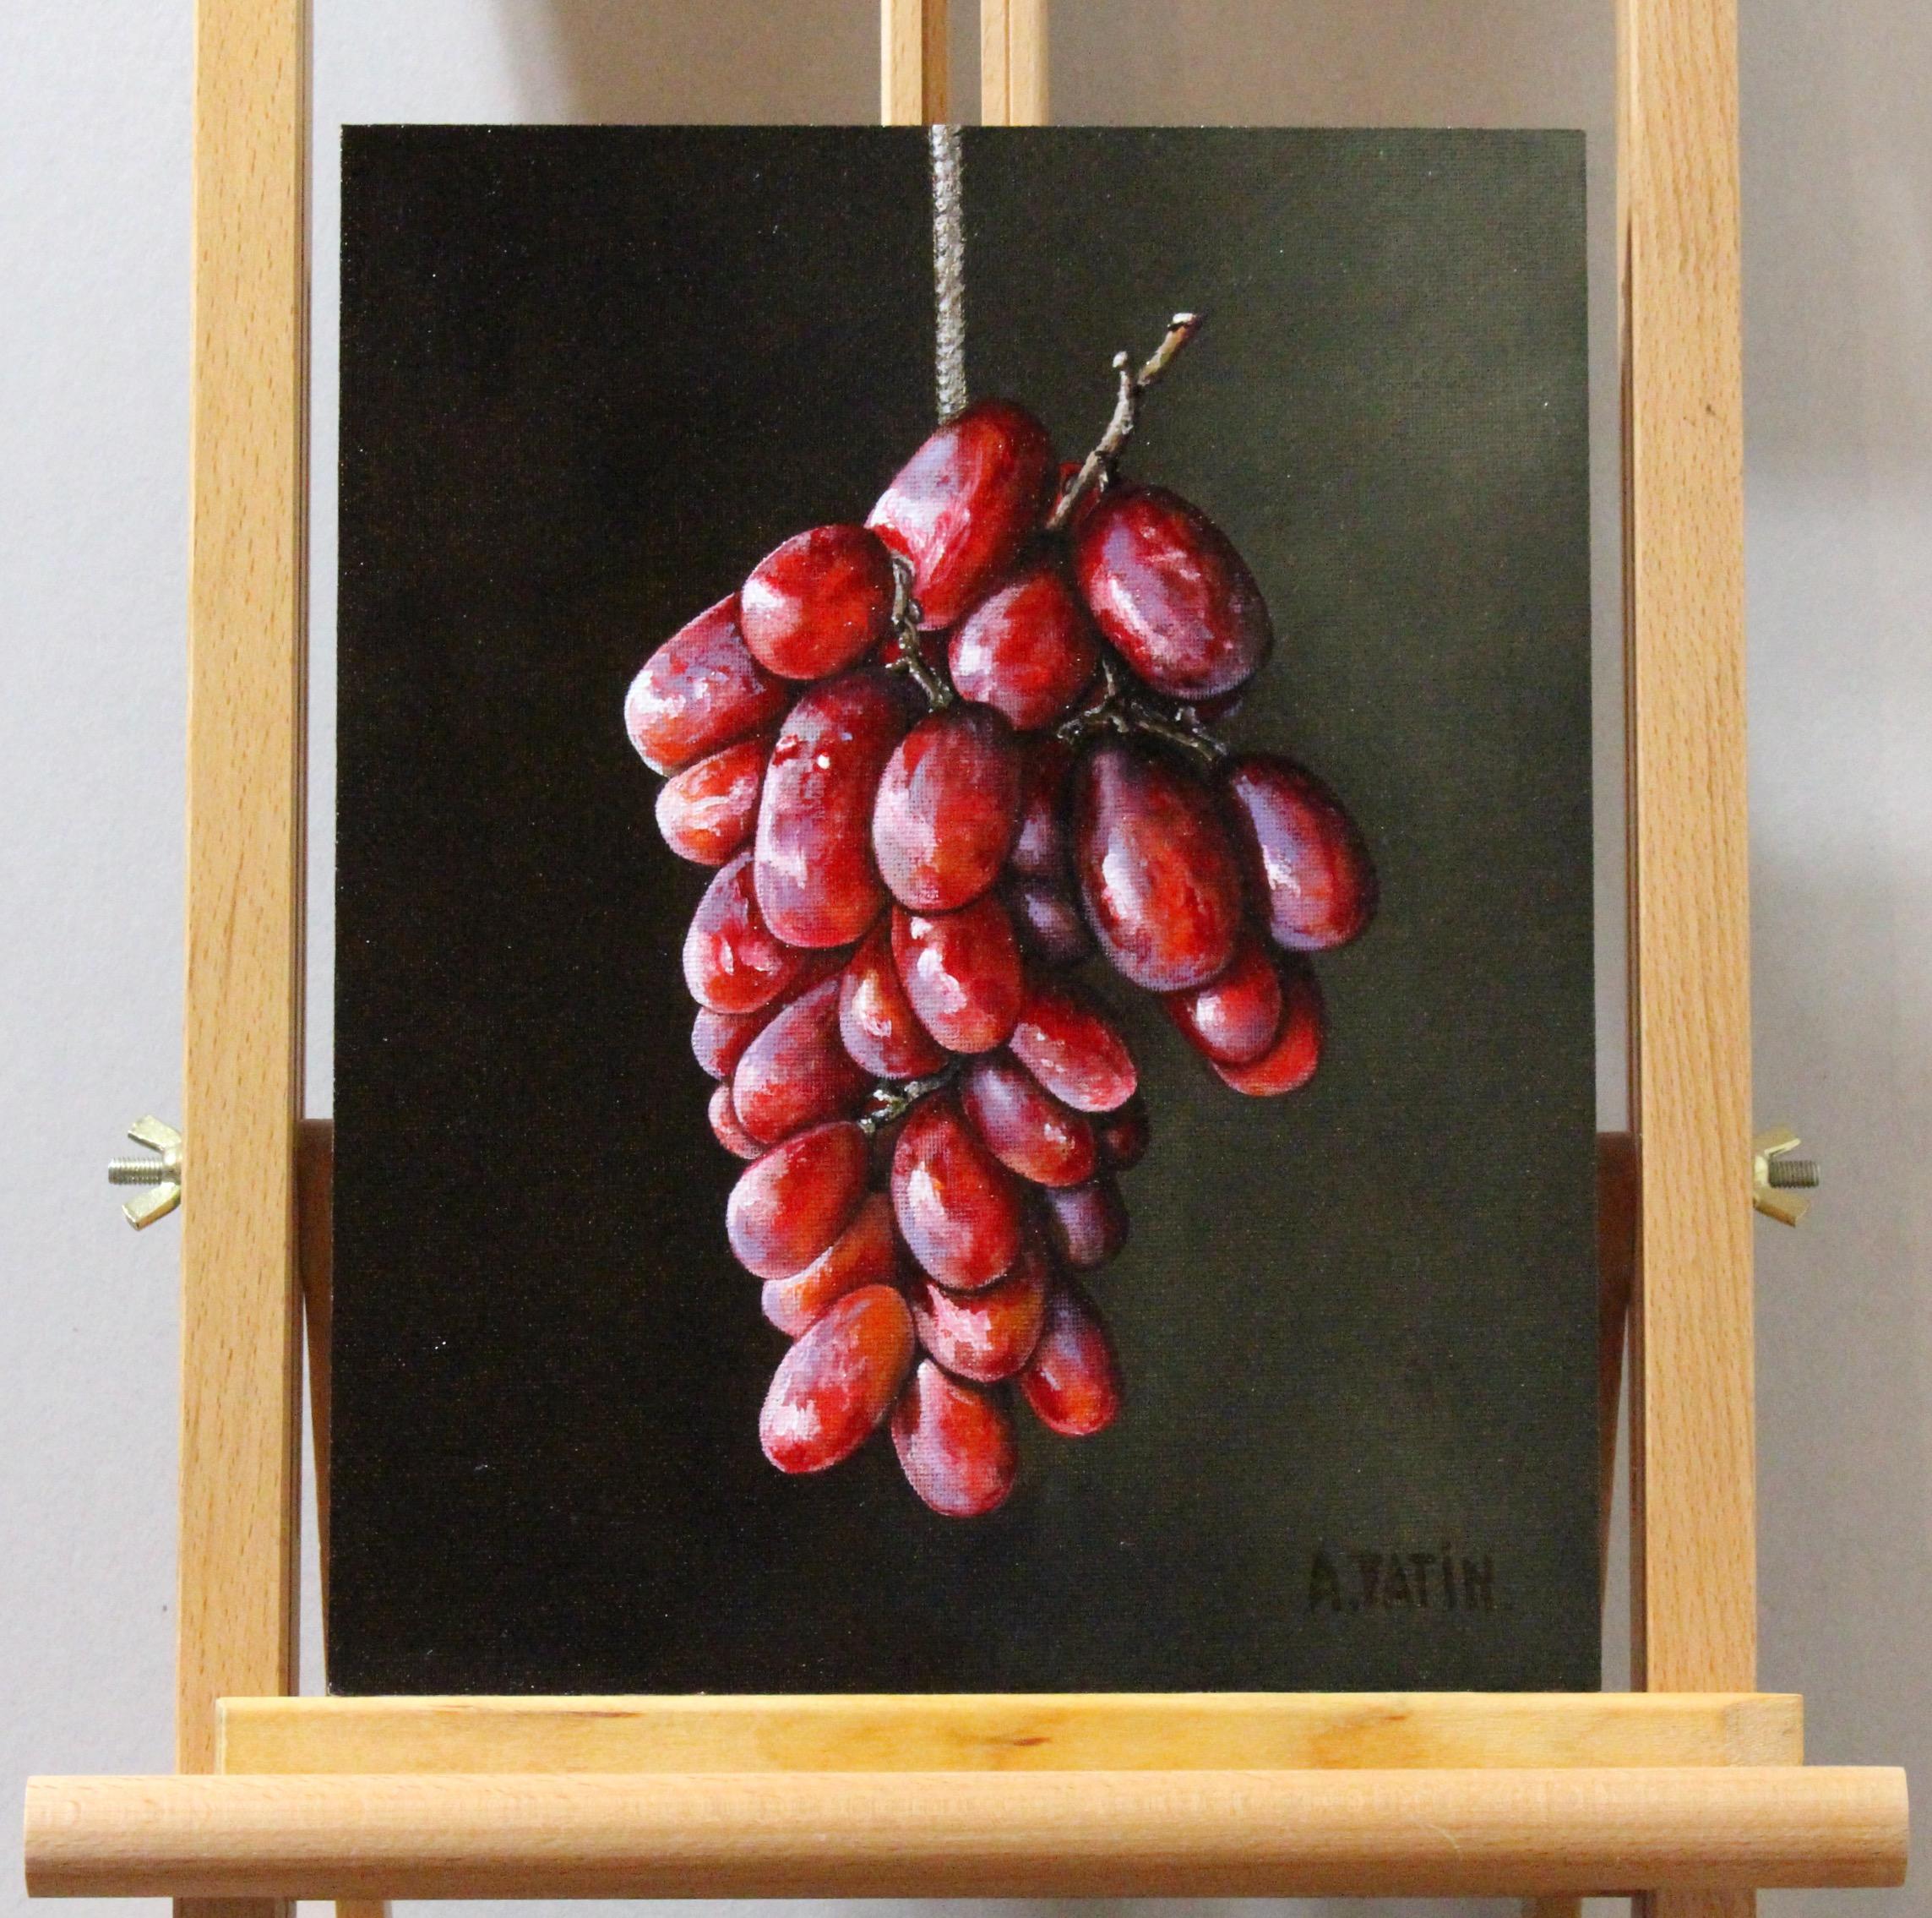 <p>Kommentare des Künstlers<br>Eine Traube roter Weintrauben leuchtet von innen heraus, ähnlich wie kleine Glühbirnen. Das Kunstwerk zeigt ihre klassische Form und Lichtdurchlässigkeit mit weißen und violetten Sprenkeln auf ihrer Haut. Die mit